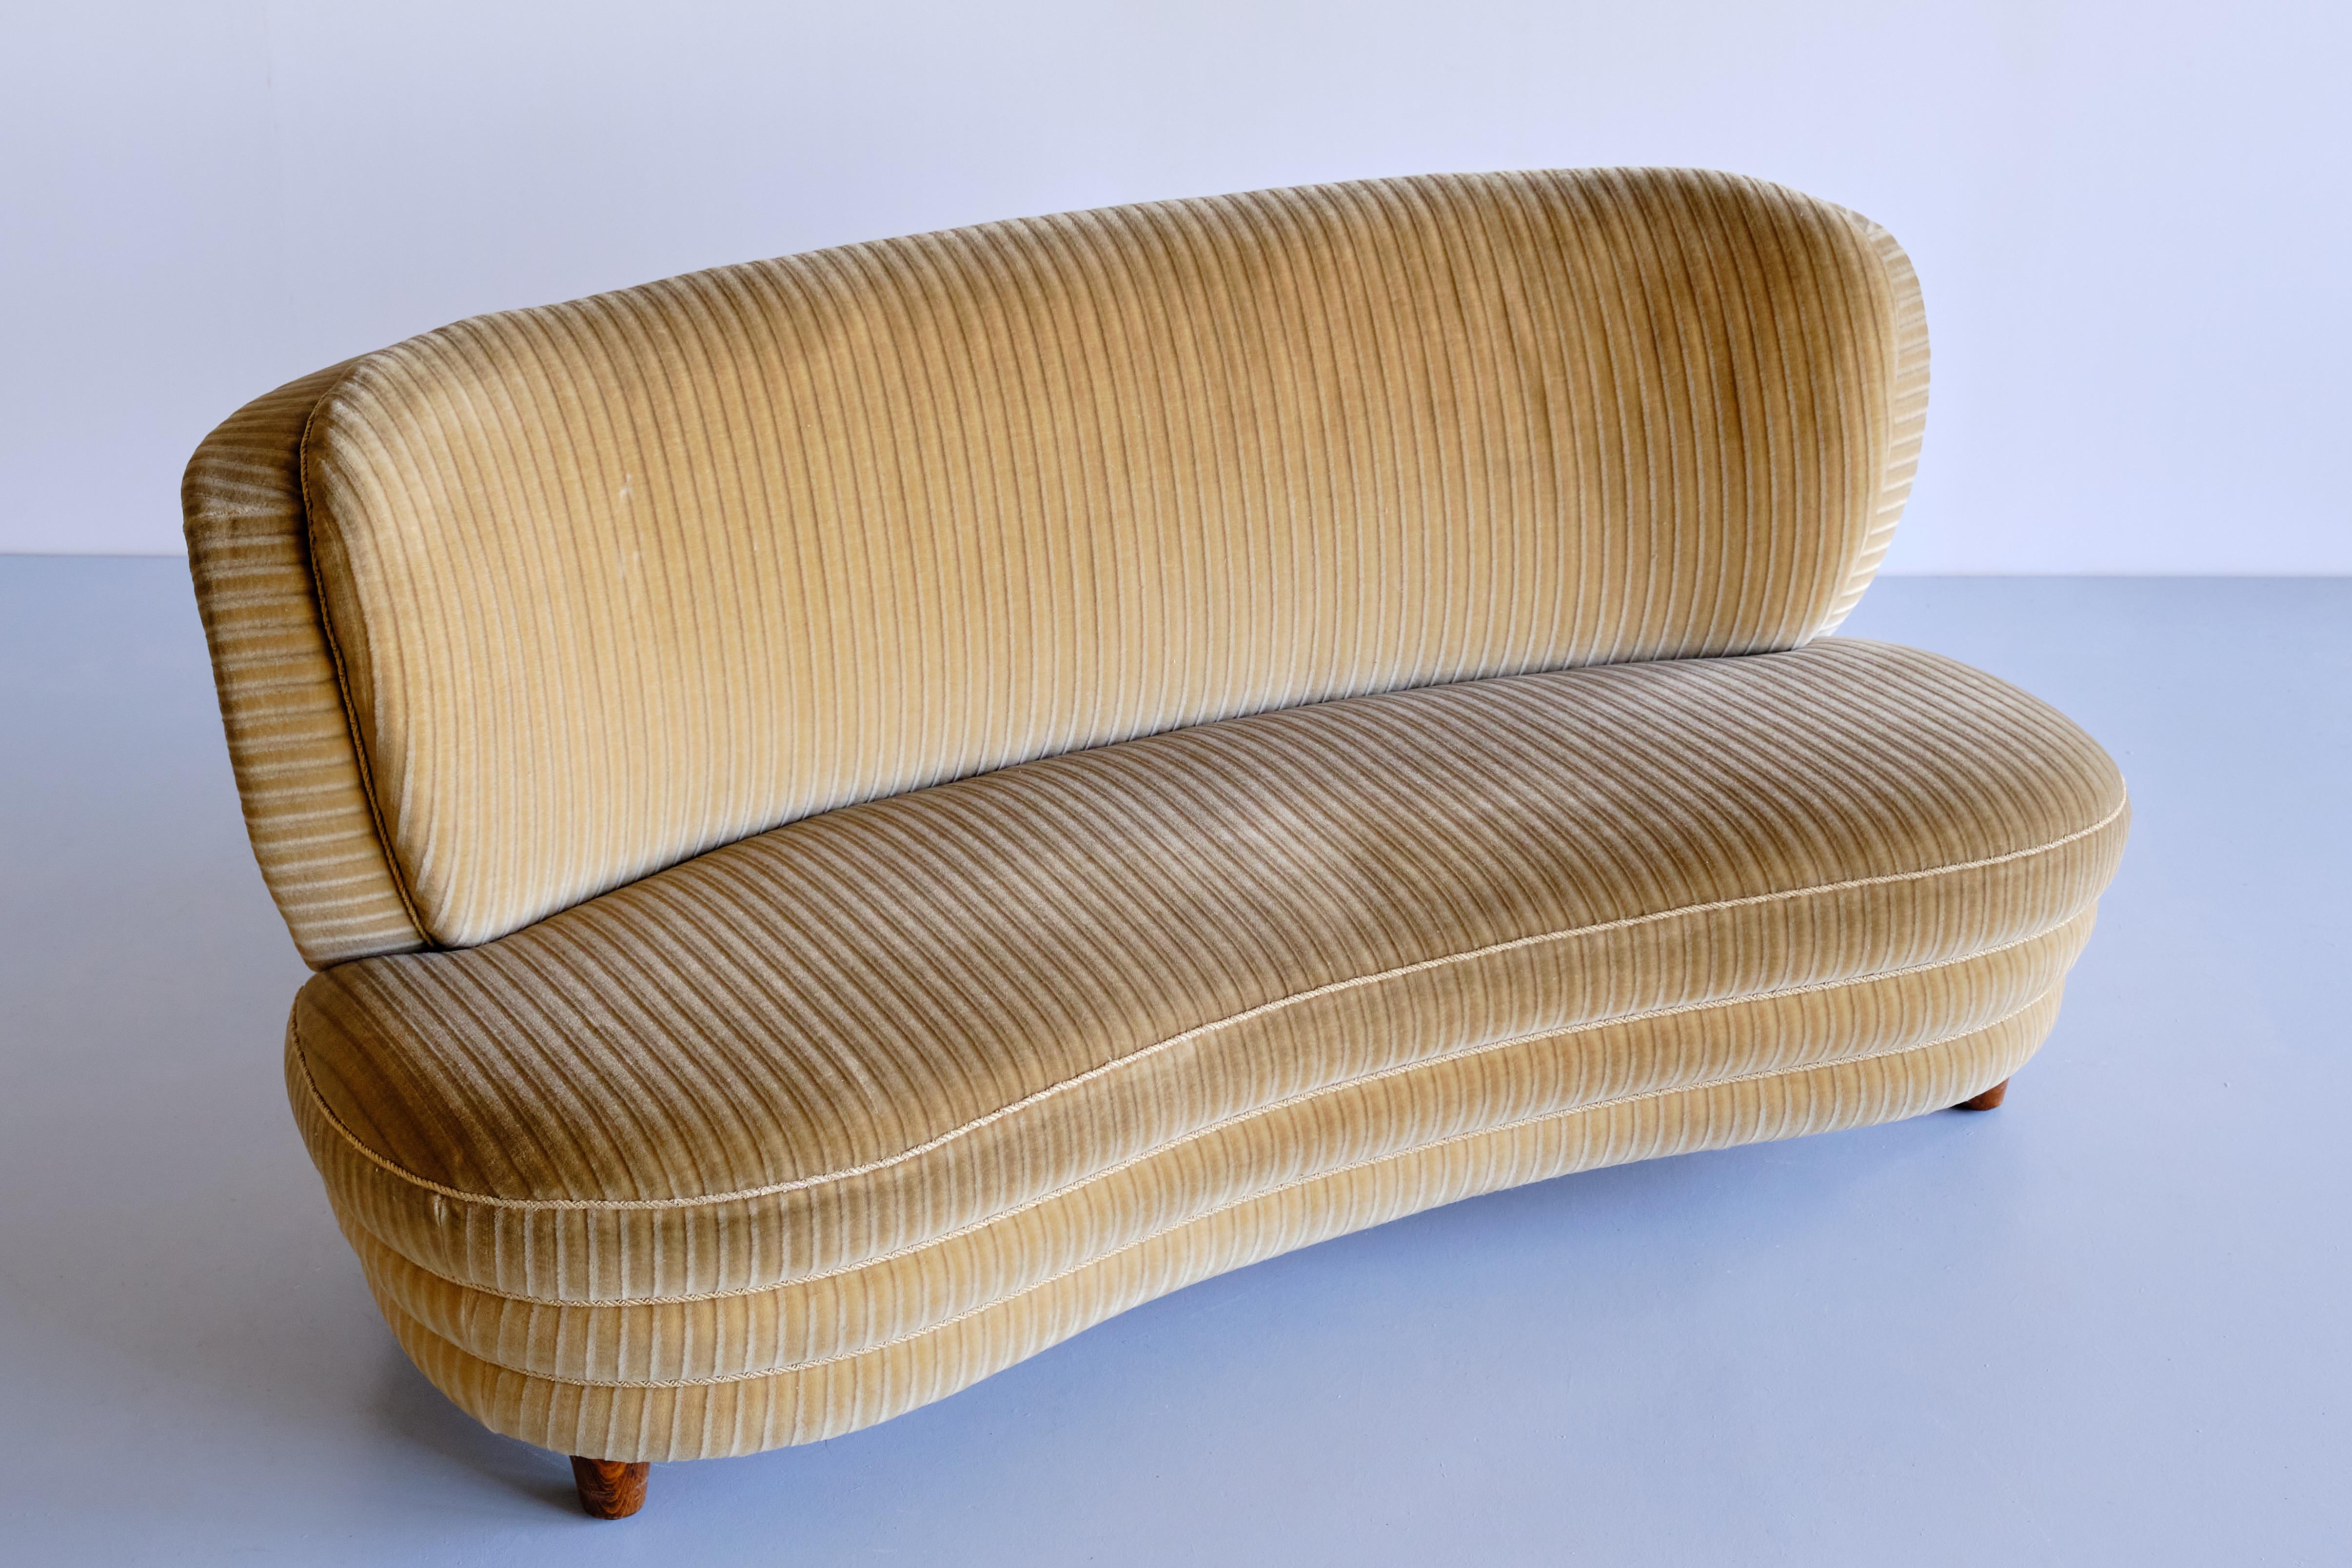 Dieses geschwungene Sofa wurde von Adolf Wrenger entworfen und von seiner Firma in Lippe:: Deutschland:: in den frühen 1950er Jahren hergestellt. Die geschwungene Form und die runden Linien sowohl der Rückenlehne als auch der Sitzfläche verleihen